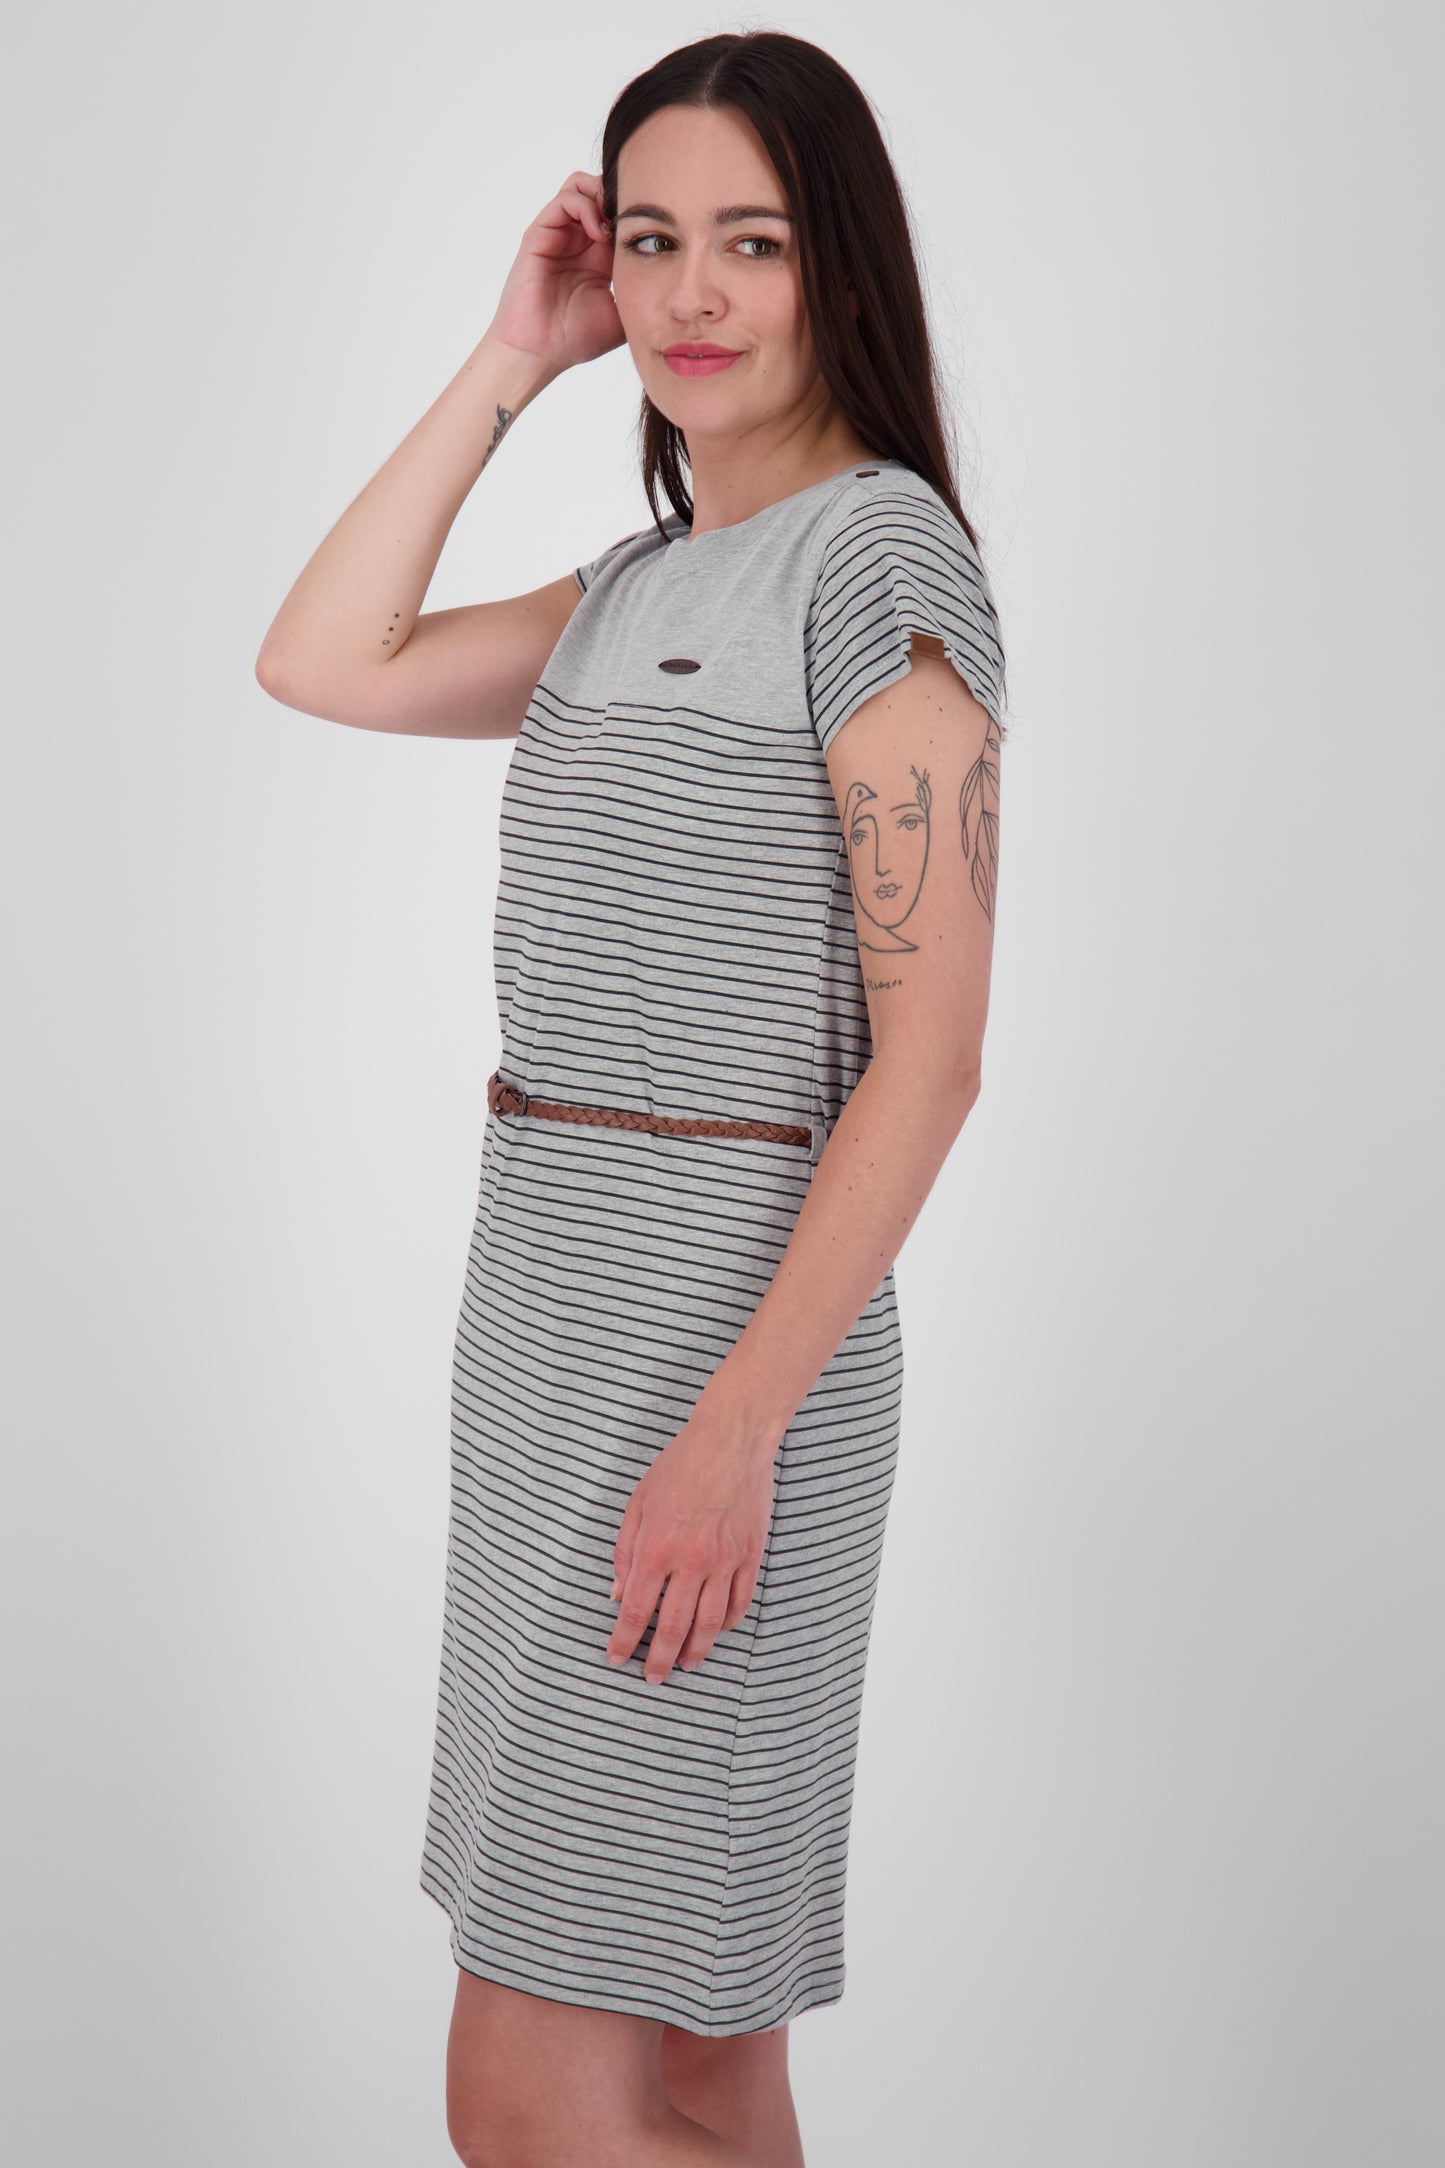 Damenkleid LeoniceAK B - Femininer Look mit trendigem Allover-Print Grau